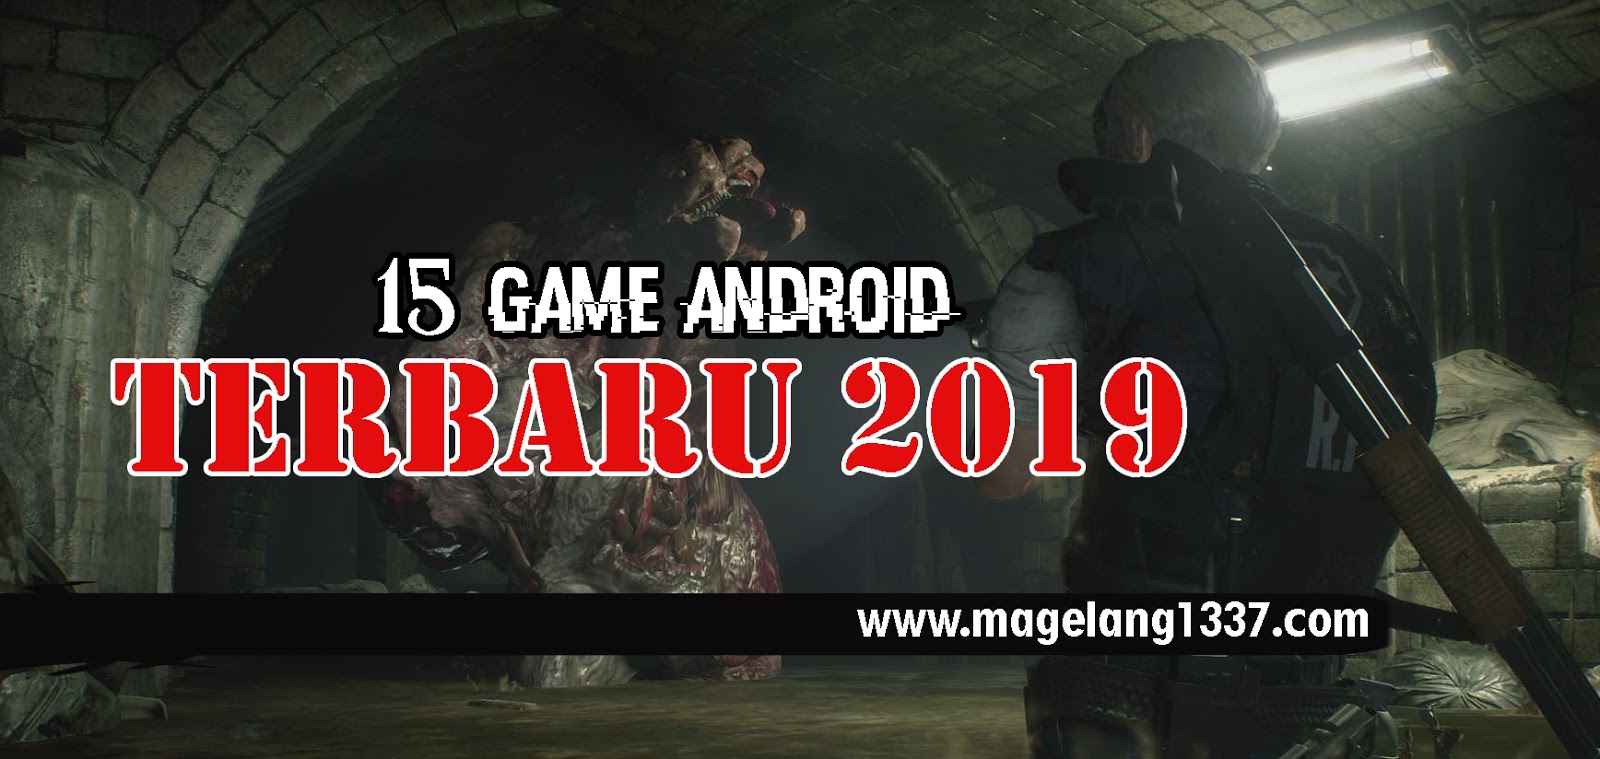 15 Game Android Terbaru 2019